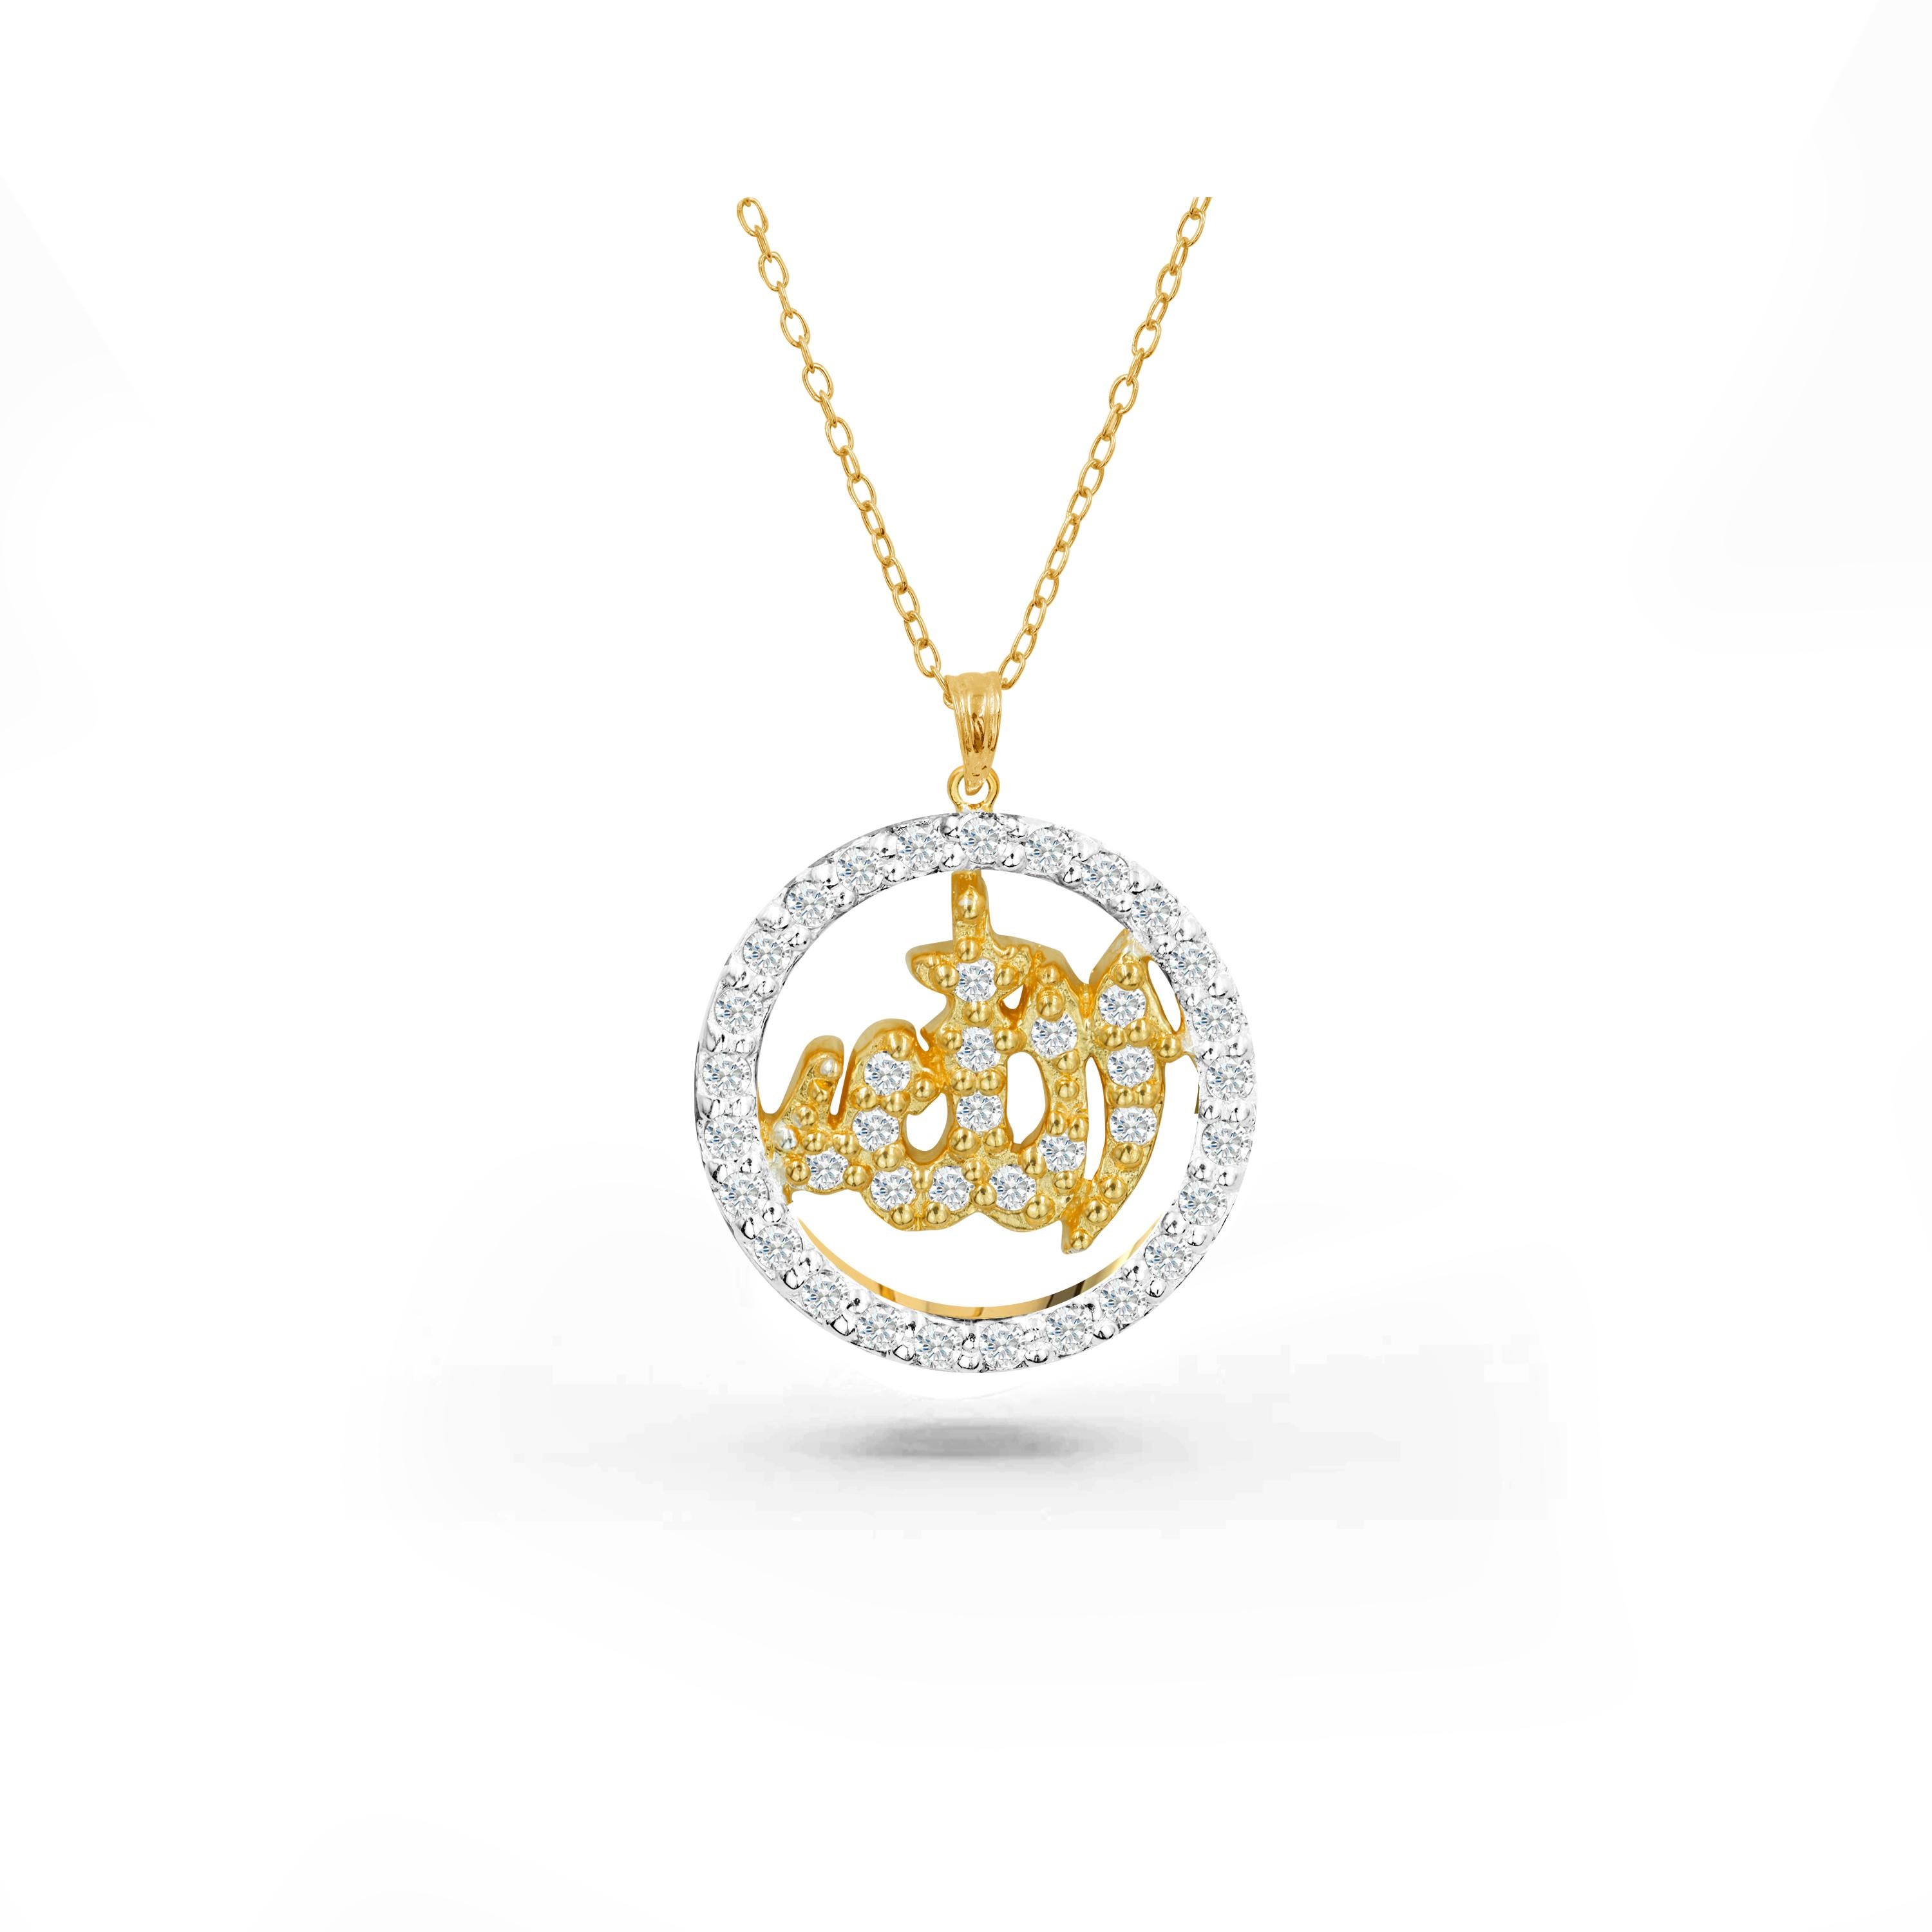 Die handgefertigte Allah-Diamant-Halskette ist perfekt für den täglichen Gebrauch und bringt inneren Frieden und Spiritualität. Diese wunderschöne religiöse Allah-Halskette ist ein echtes Schmuckstück. Diese islamische Halskette kann nach Ihrer Wahl